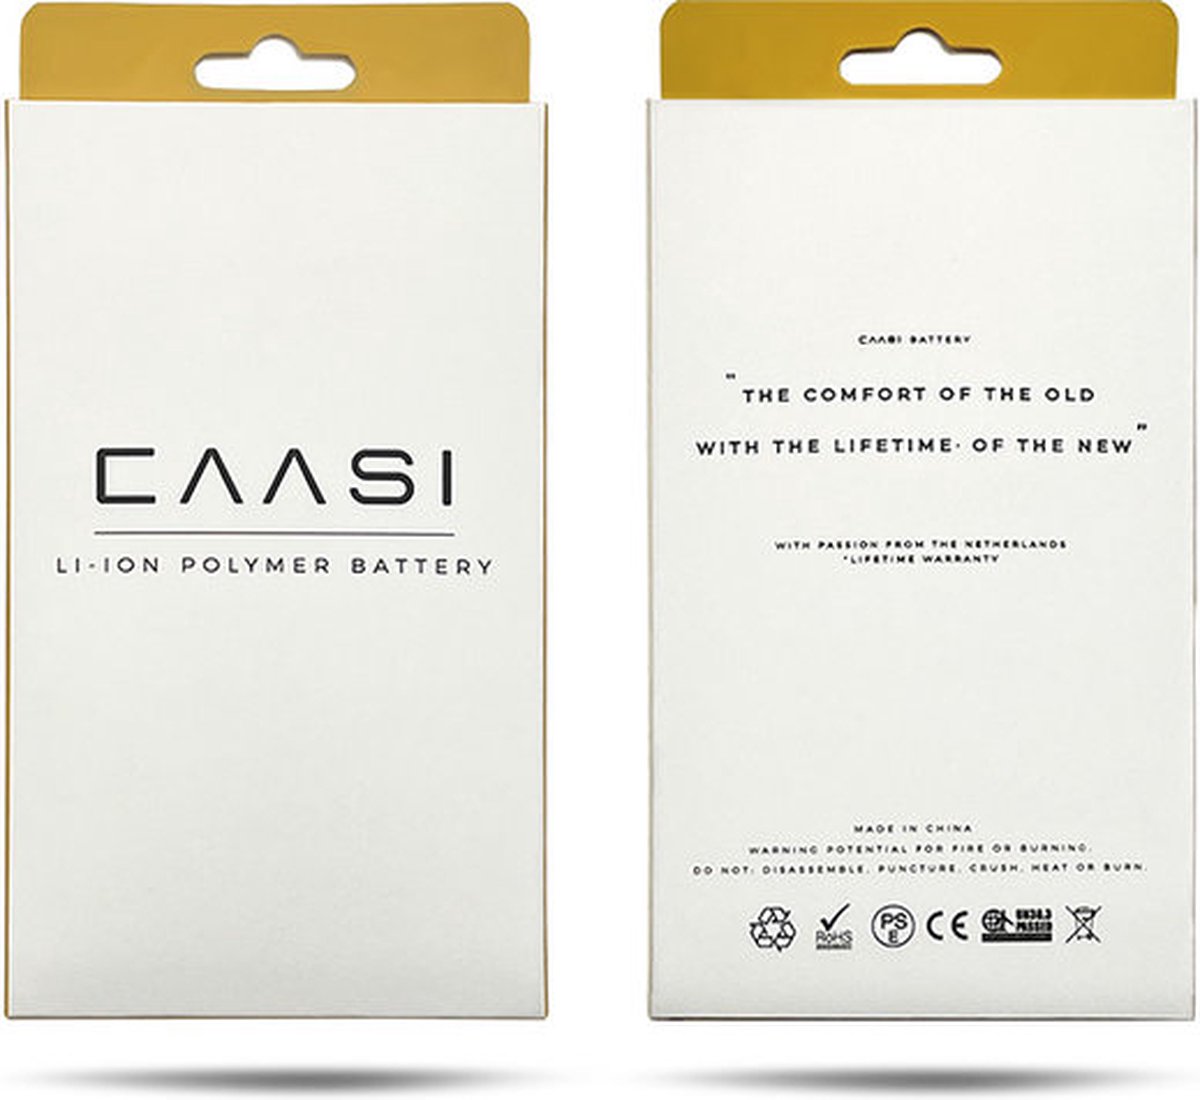 Caasi iPhone 8 Batterij | Batterij sticker | Originele kwaliteit |